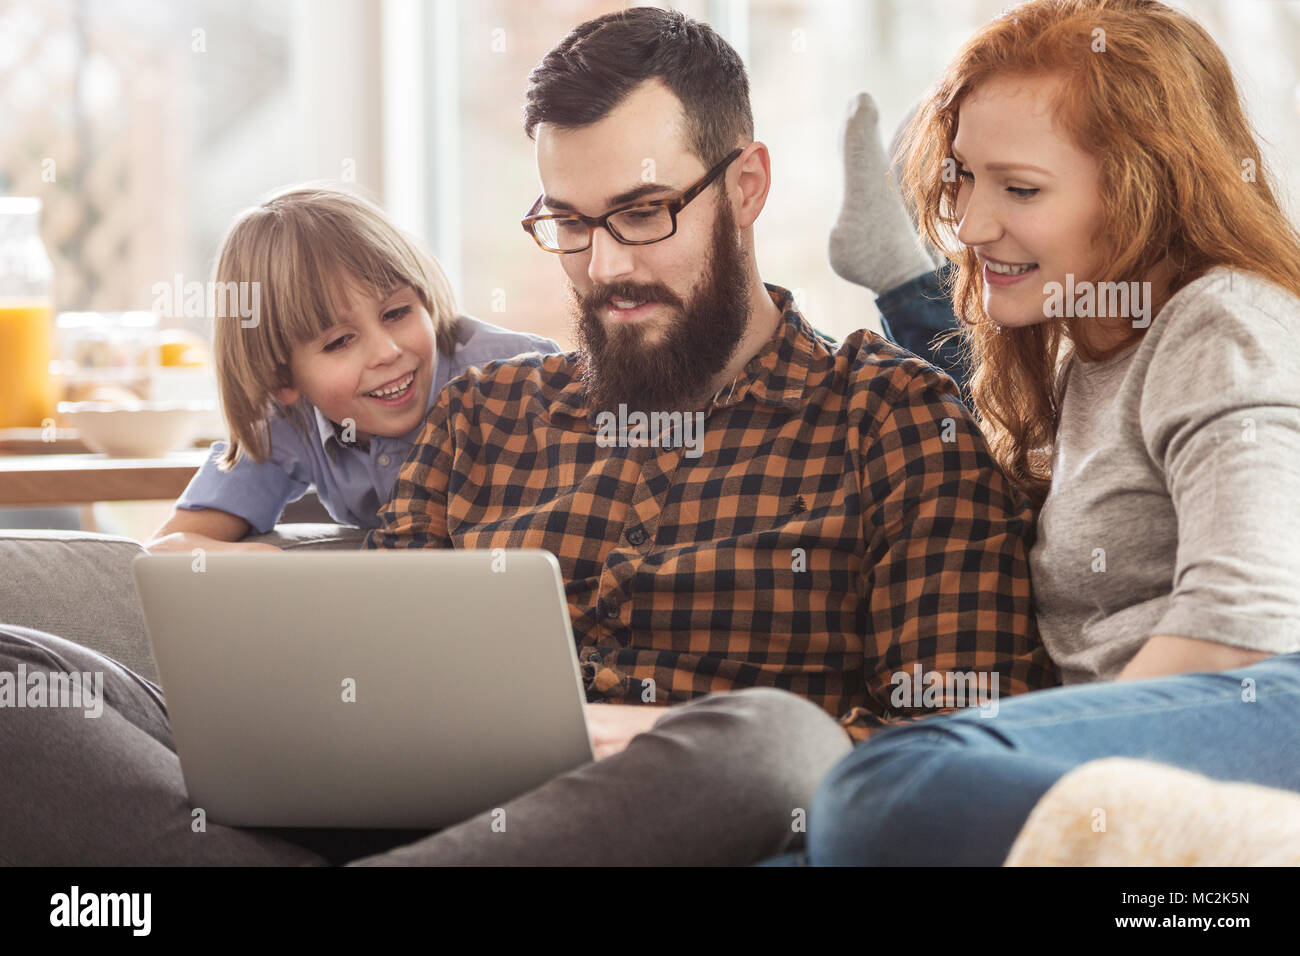 Happy Family anschauen Fotos zusammen auf einem Laptop beim Sitzen auf einer Couch Stockfoto